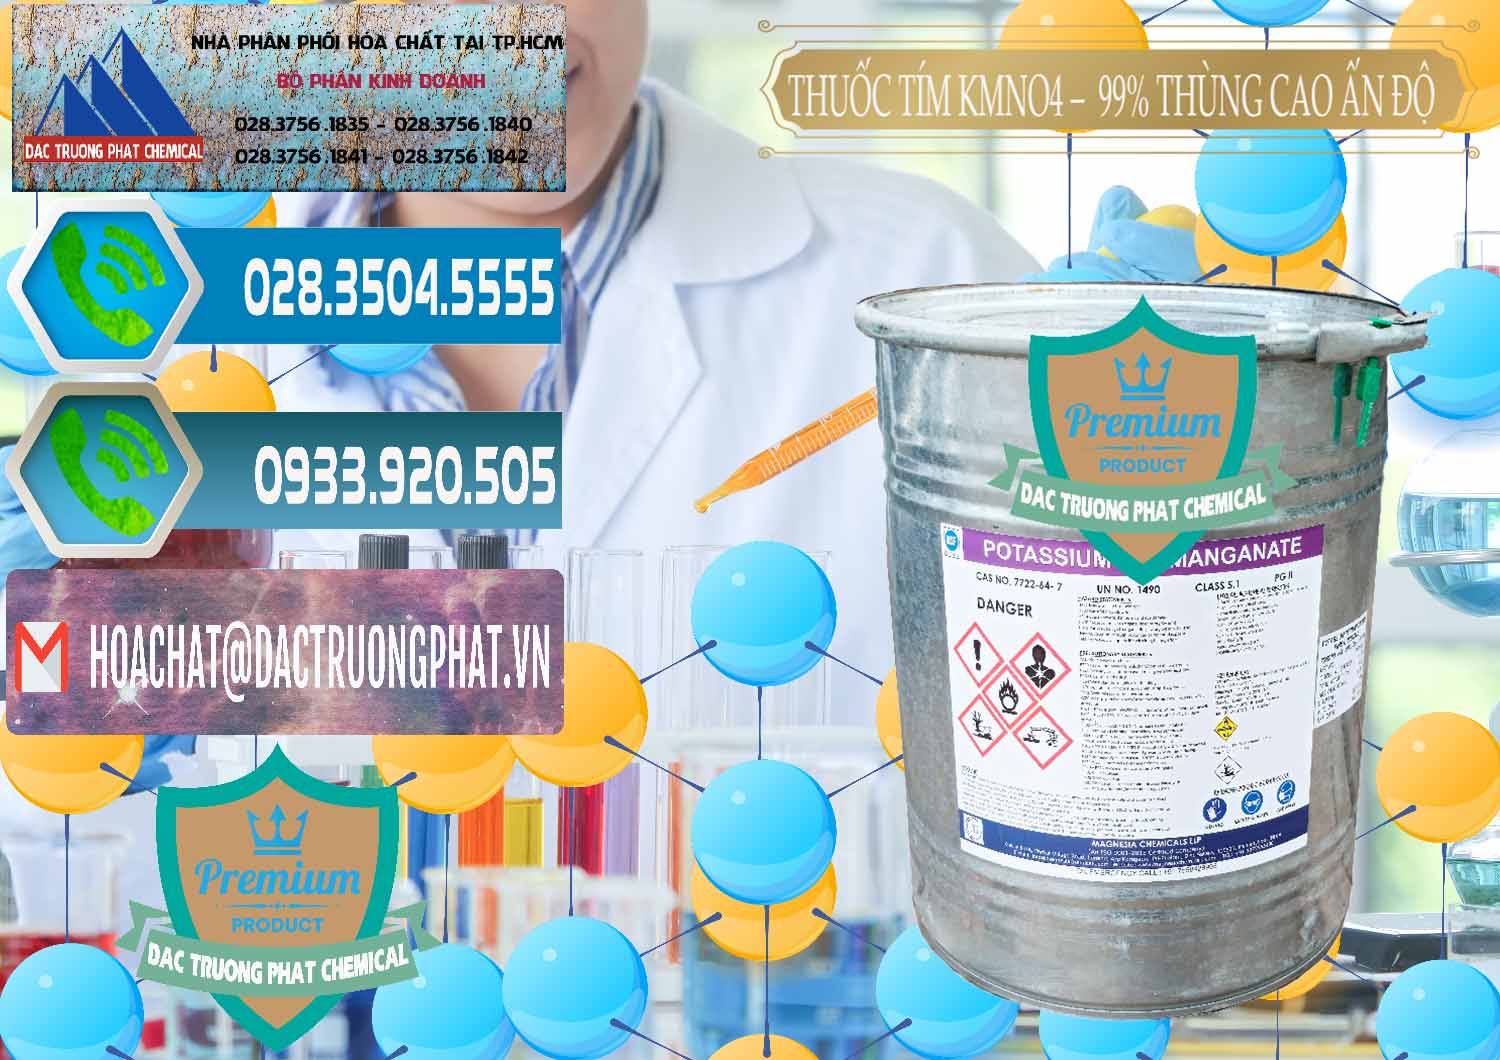 Chuyên kinh doanh _ bán Thuốc Tím - KMNO4 Thùng Cao 99% Magnesia Chemicals Ấn Độ India - 0164 - Cty chuyên kinh doanh & phân phối hóa chất tại TP.HCM - congtyhoachat.net